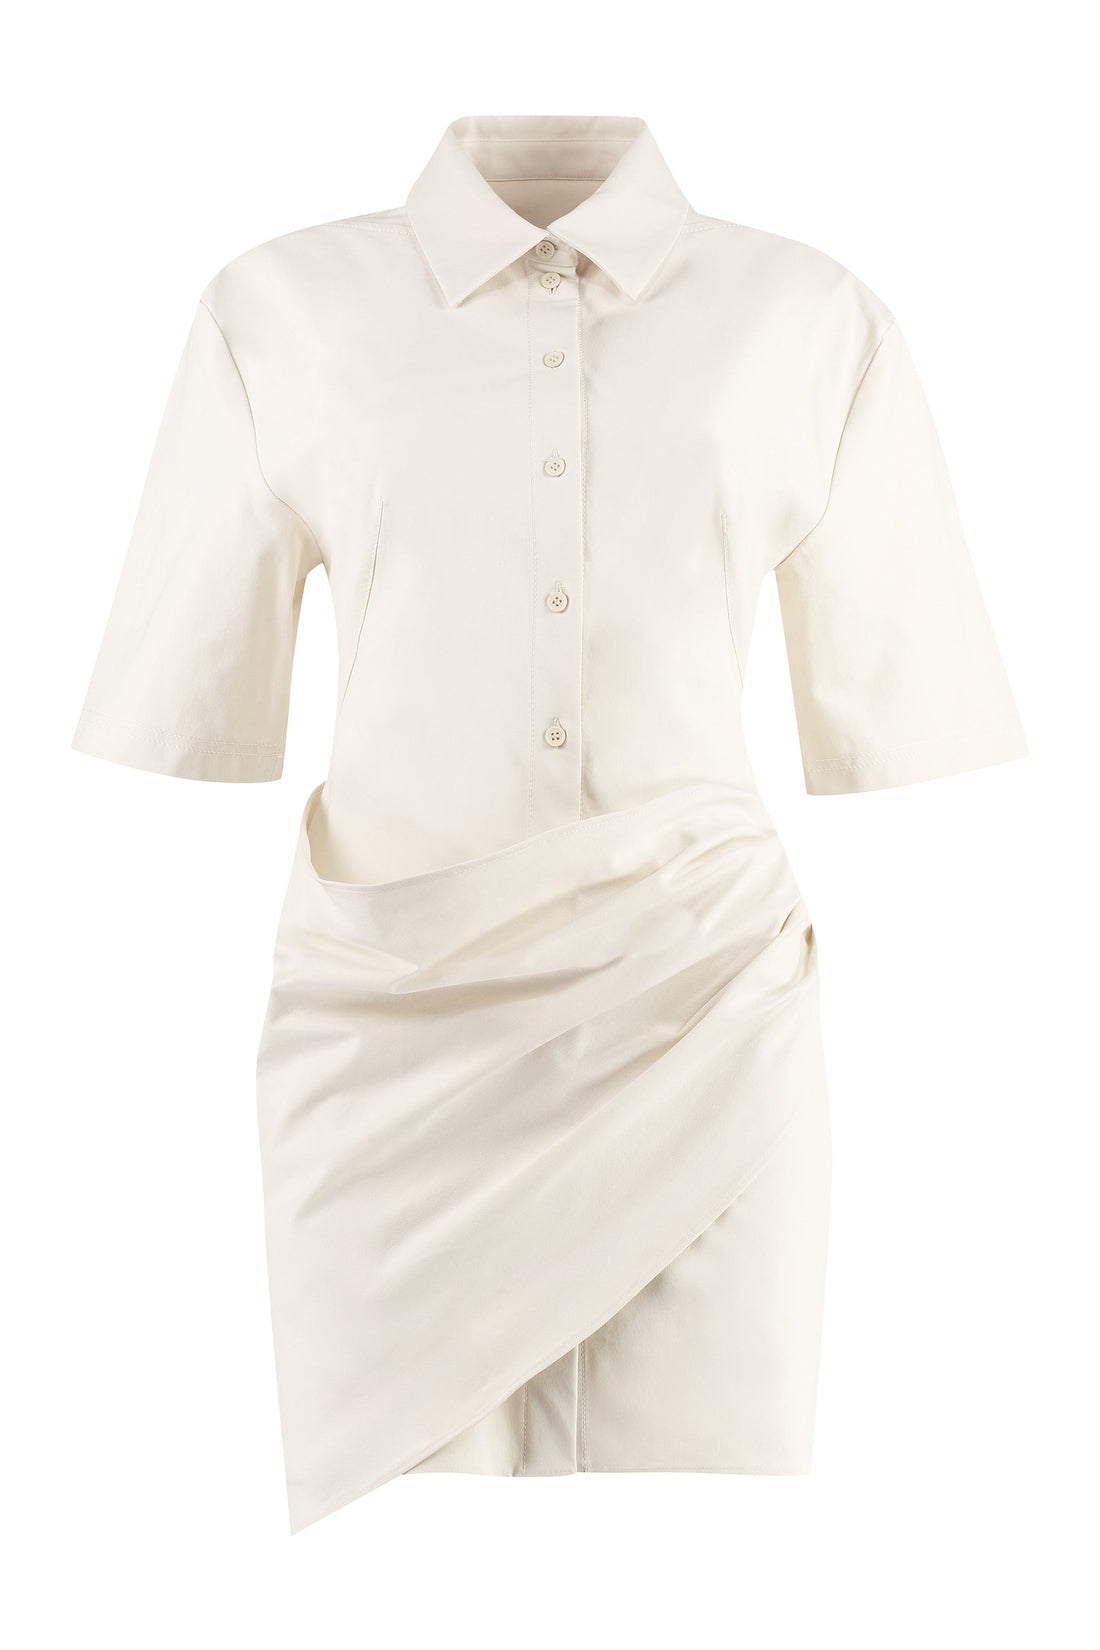 Jacquemus-OUTLET-SALE-La Robe Camisa shirt dress-ARCHIVIST